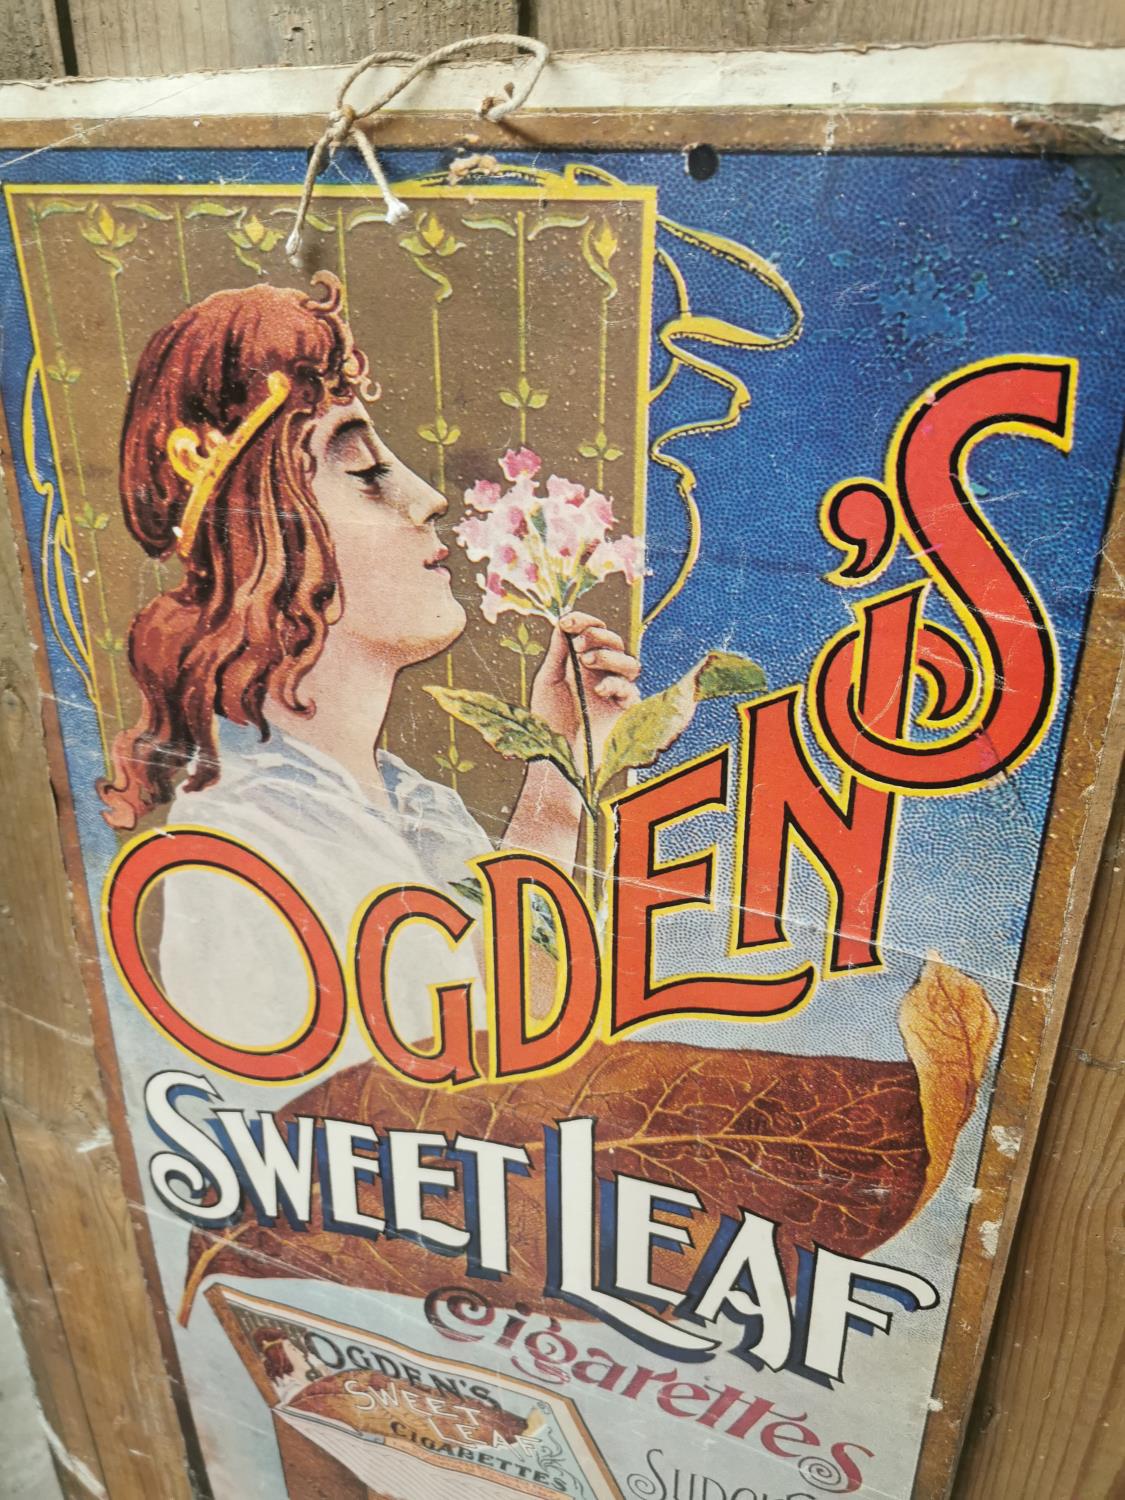 Ogden's Sweet Leaf Cigarettes advertising print - Image 2 of 3